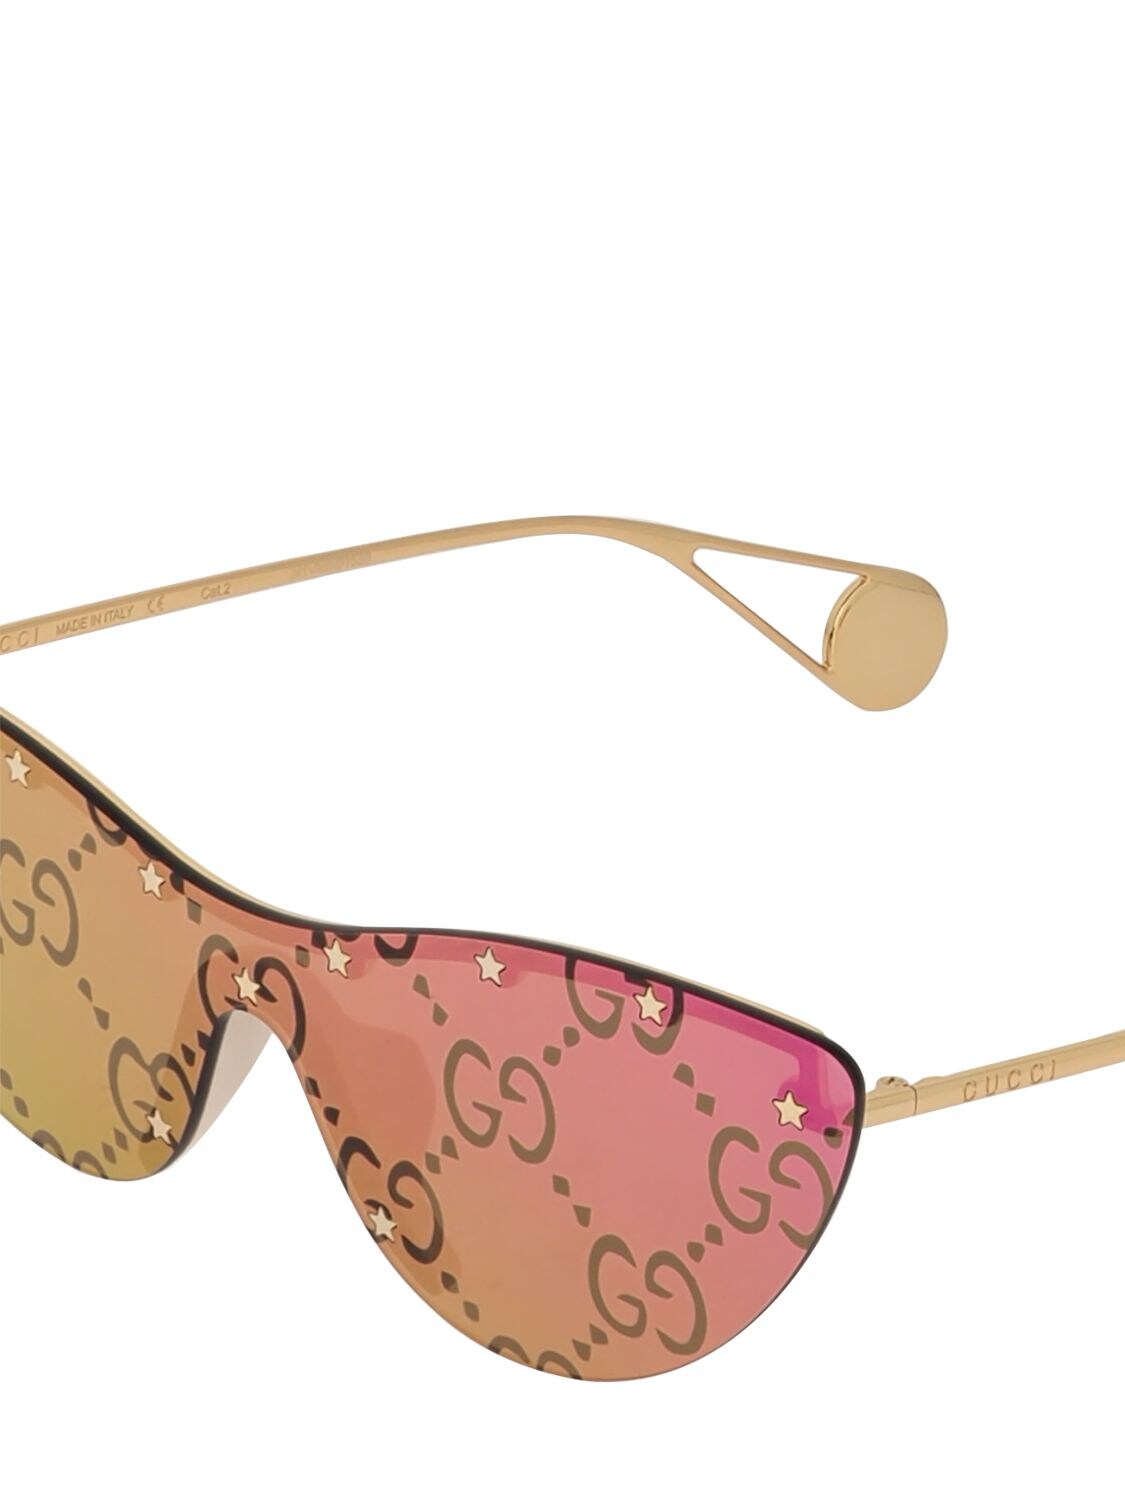 Gg Monogram Mirrored Cat Eye Sunglasses In Pink Gold